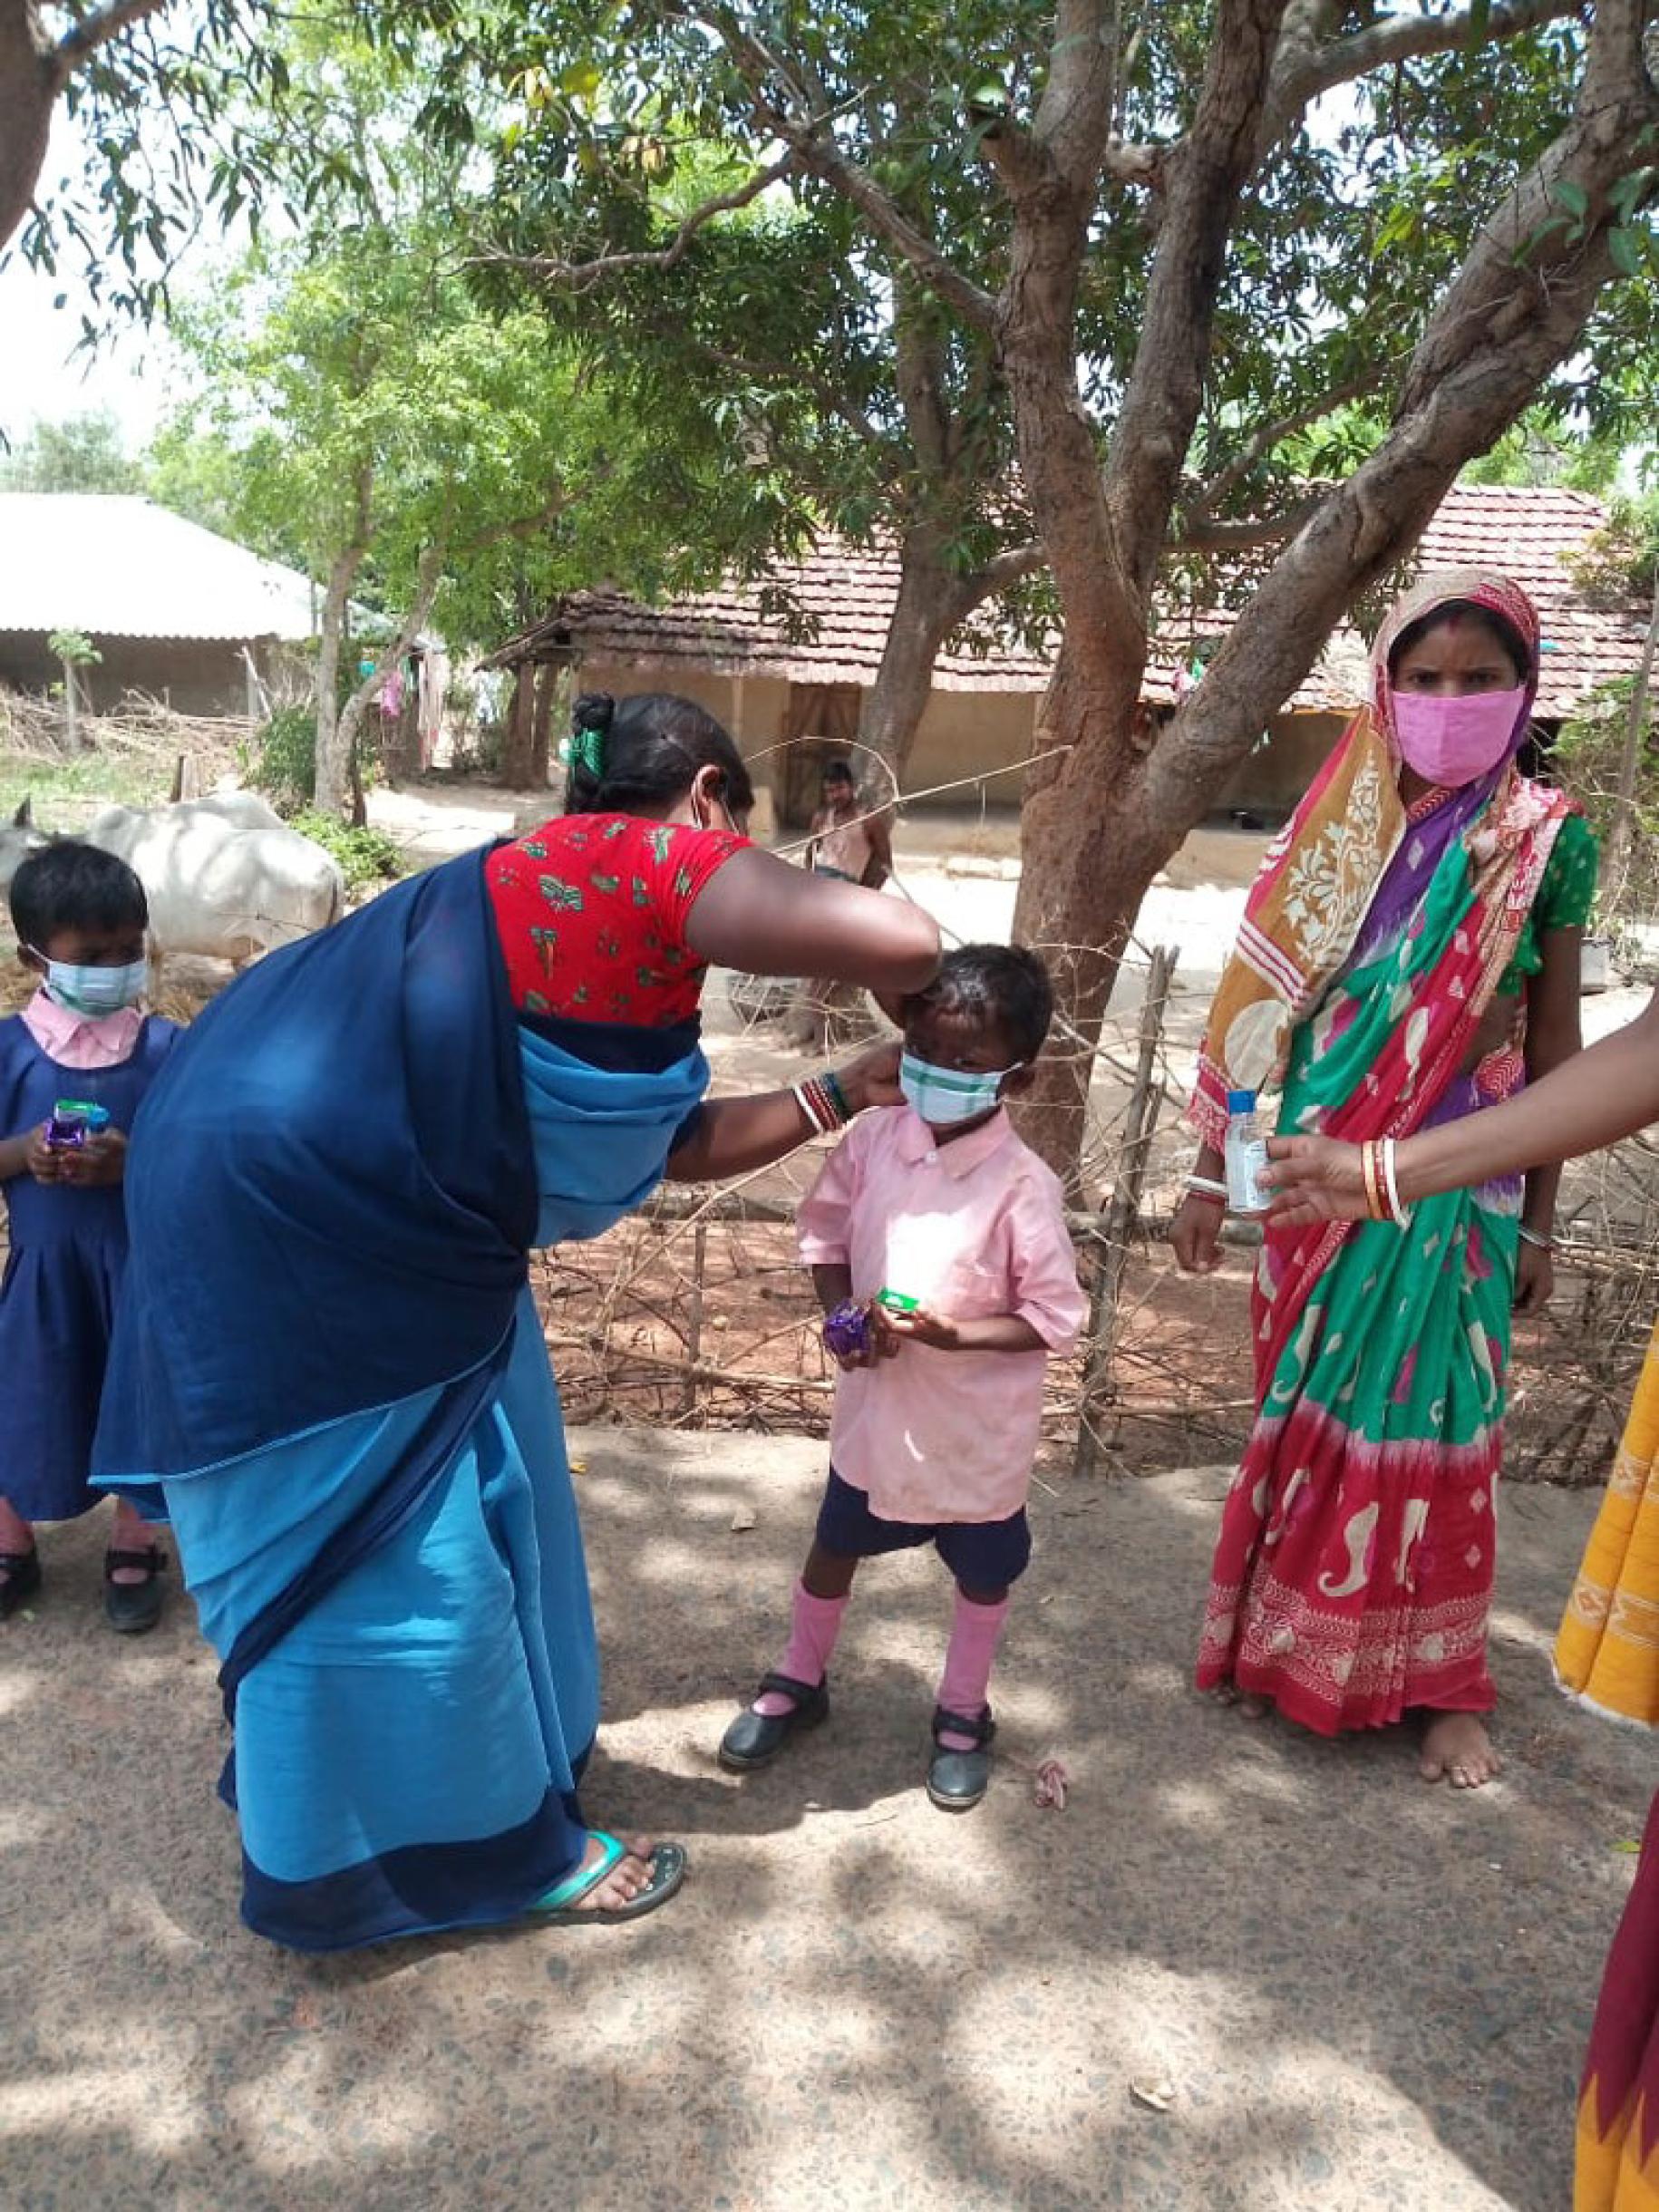 En Inde, à l’ombre d’un arbre ; une femme portant un sari aide une petite fille à ajuster son masque de protection respiratoire, tandis qu’une autre femme, en sari elle aussi, se tient debout face caméra et qu’une troisième, hors champ, tend un façon de gel hydroalcoolique à la fillette.